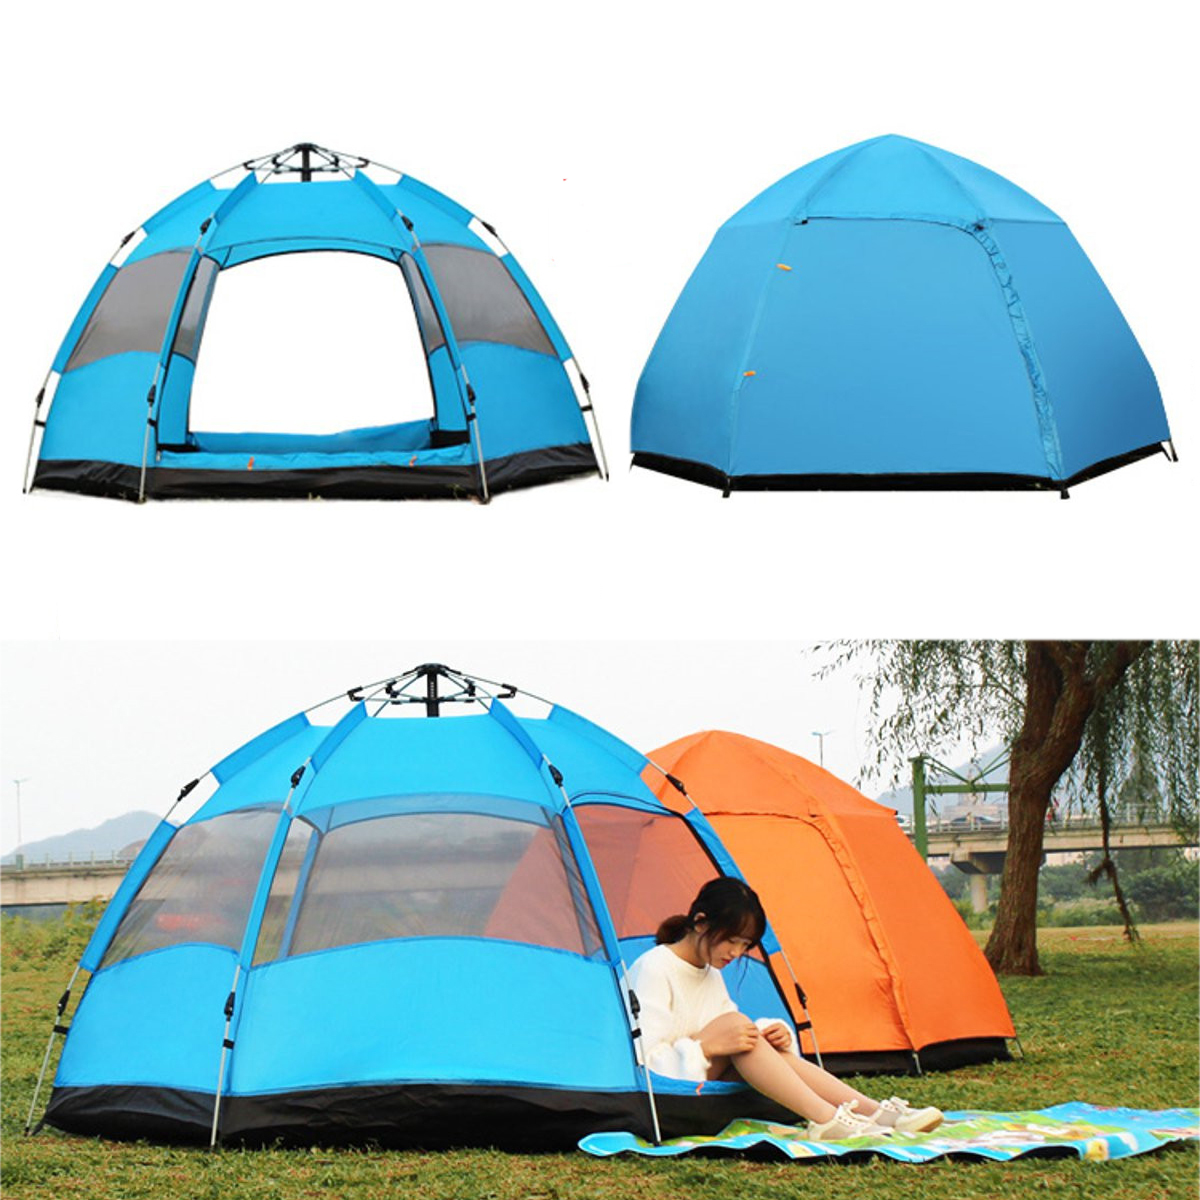 Палатки зонтичного типа. Палатка. Палатка зонт. Палатка водонепроницаемая. Палатка летняя.